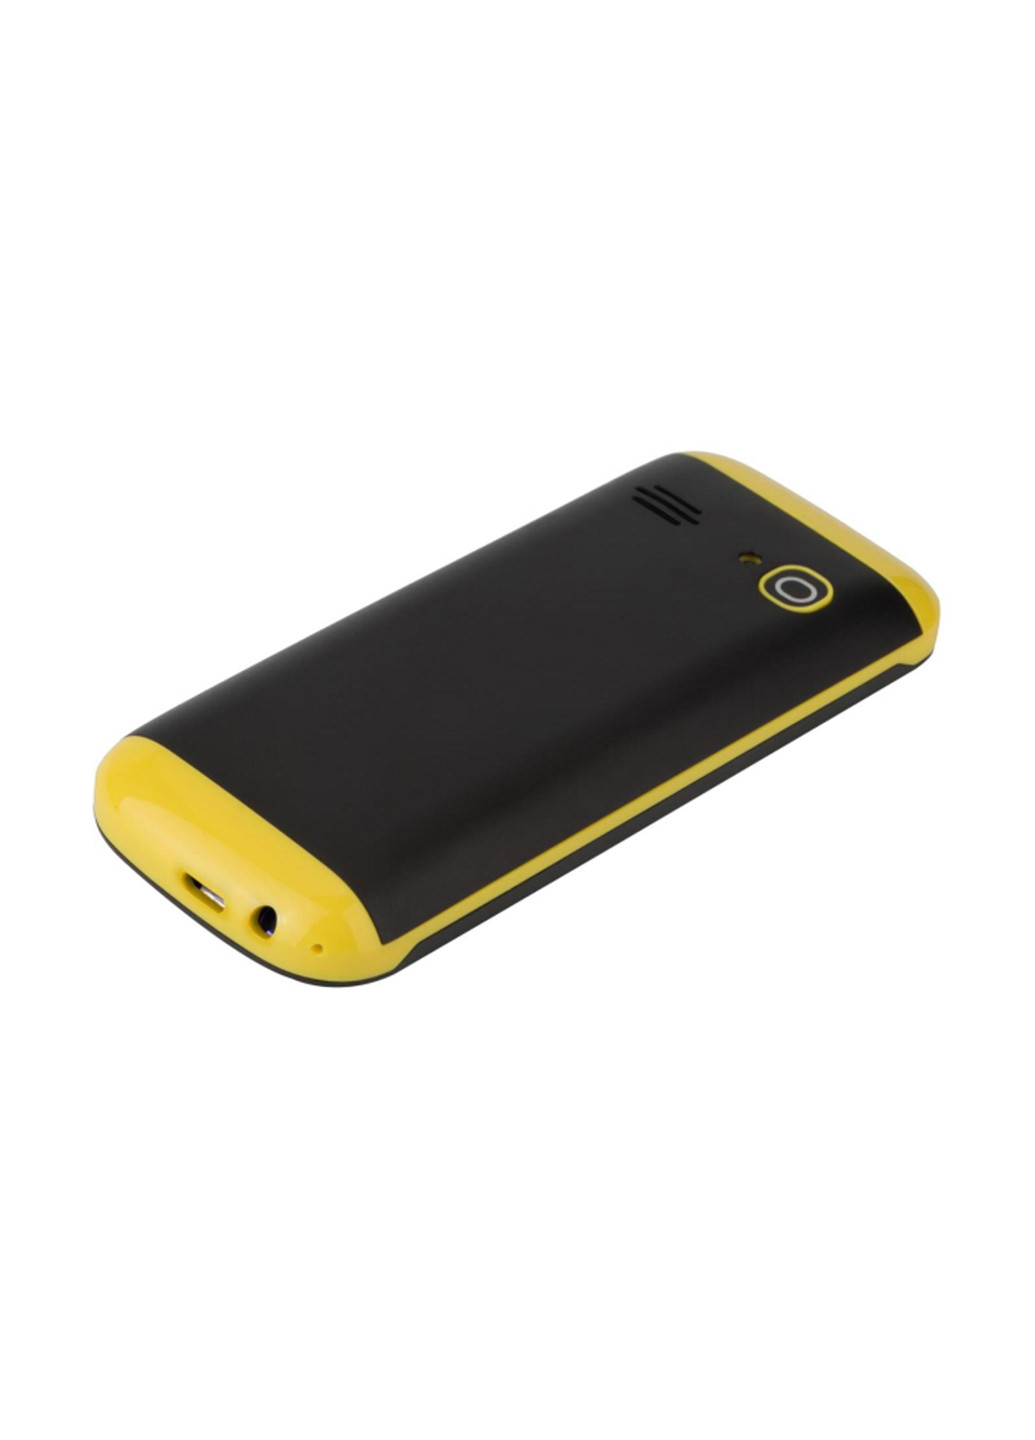 Мобильный телефон Nomi i184 black yellow (134344430)